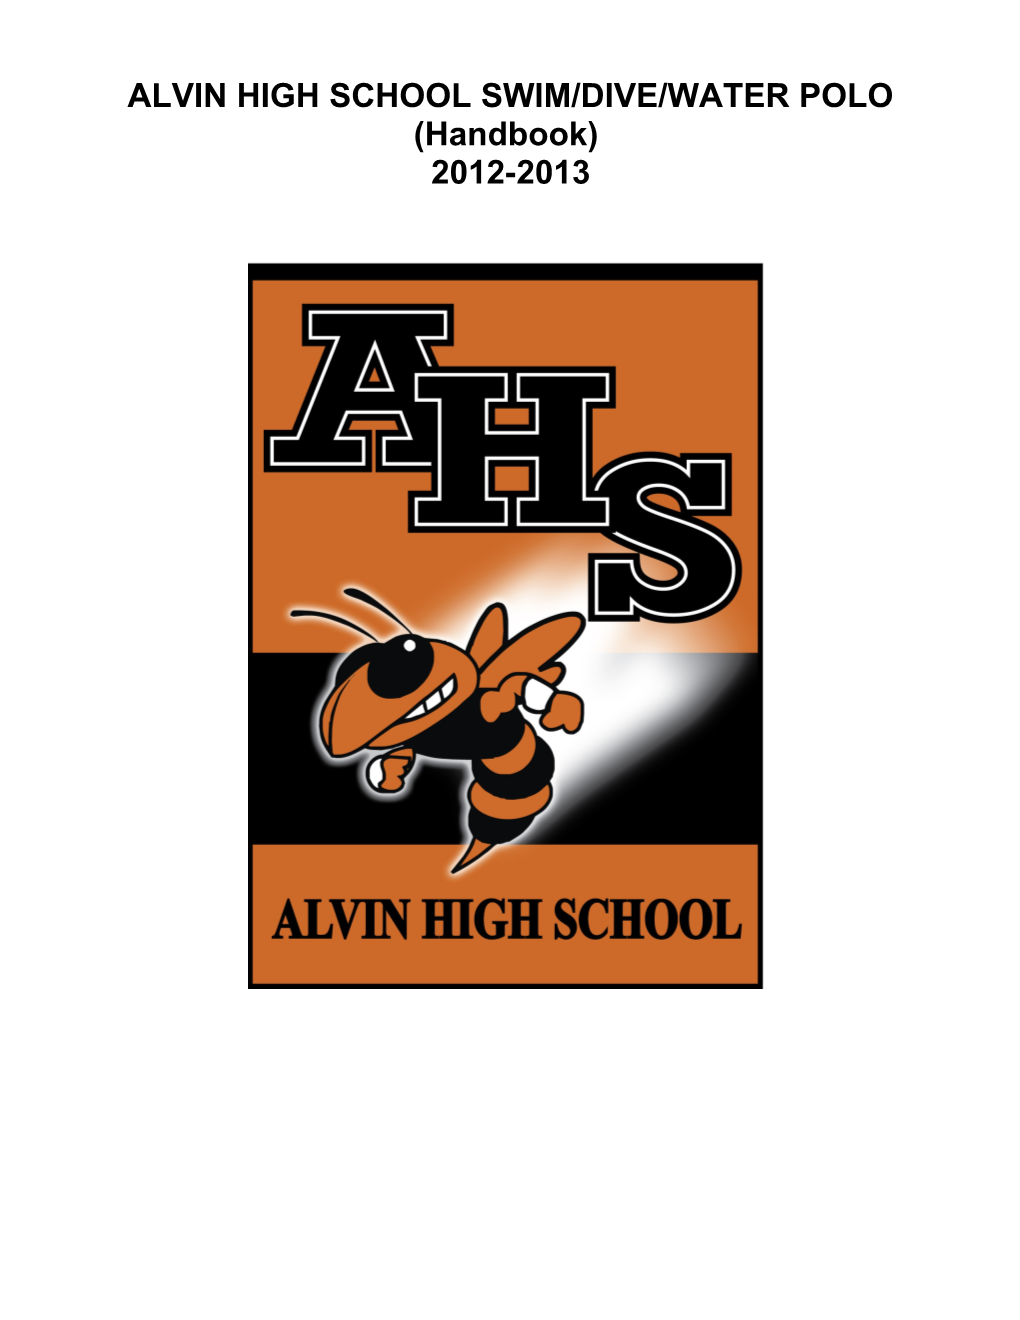 Alvin High School Swim/Dive/Water Polo